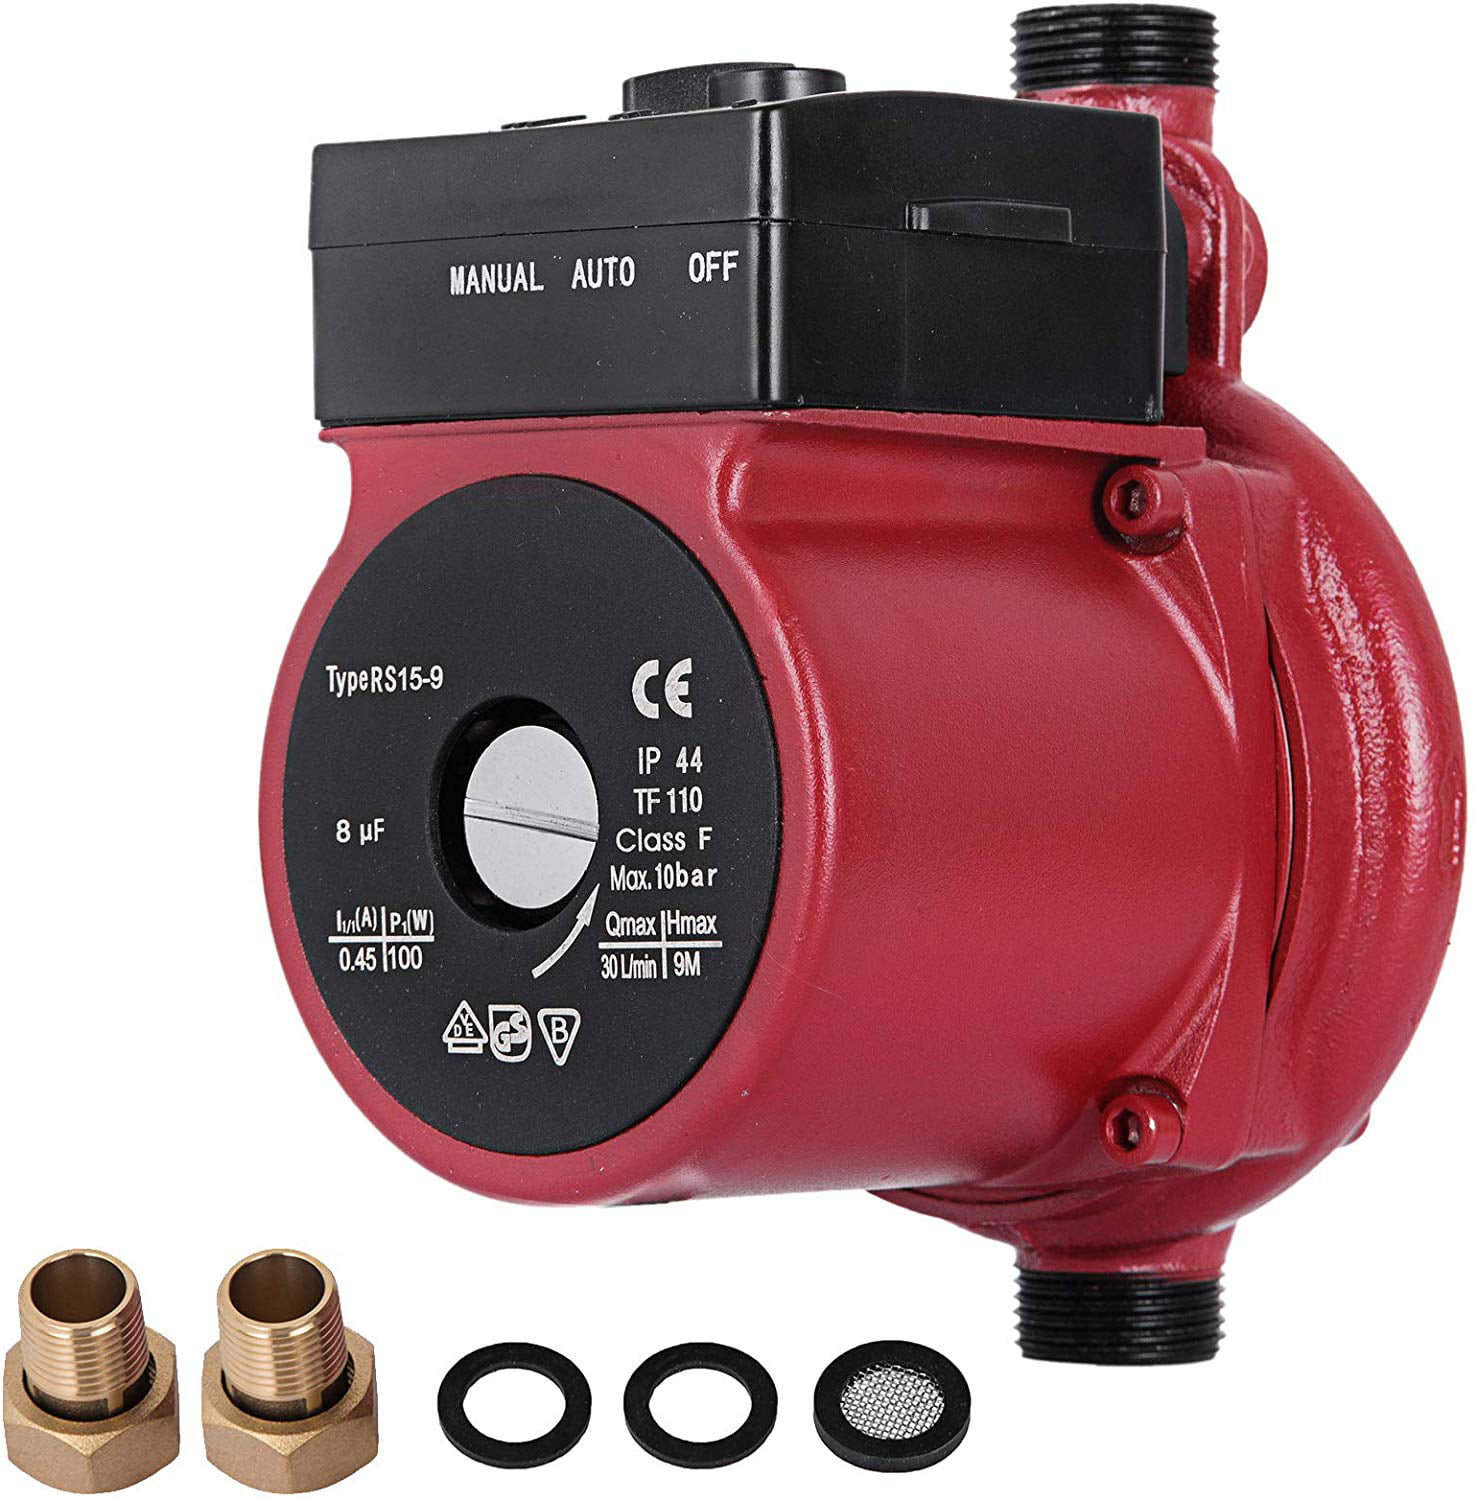 Lot of 2 G 1'',220V Hot Water Circulation Pump 3-Speed Circulating Pump 